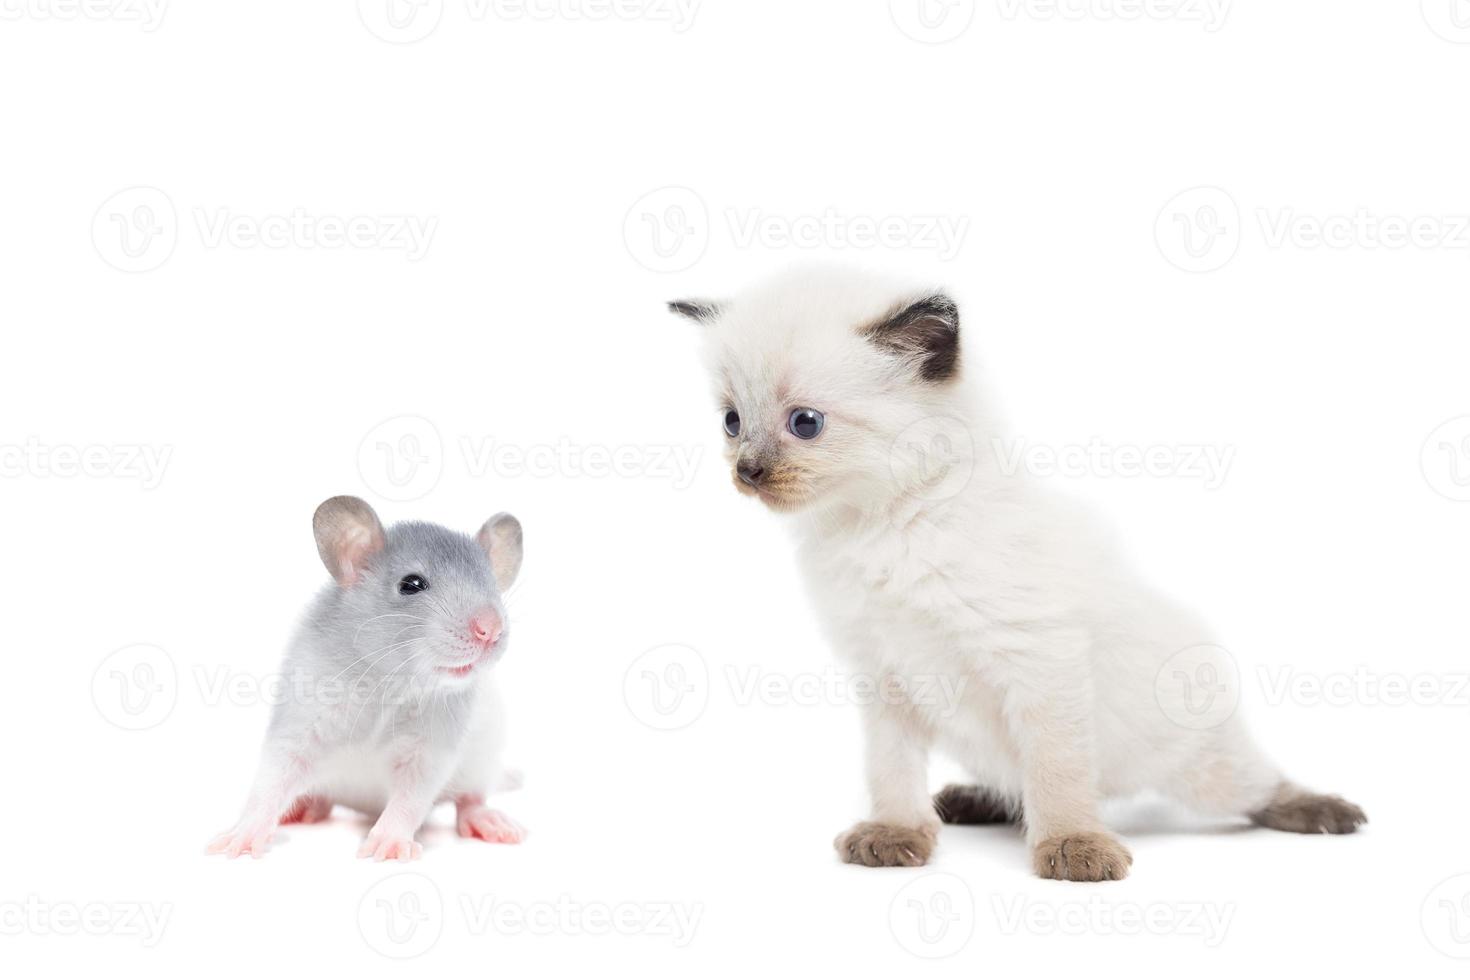 animals on isolated background photo